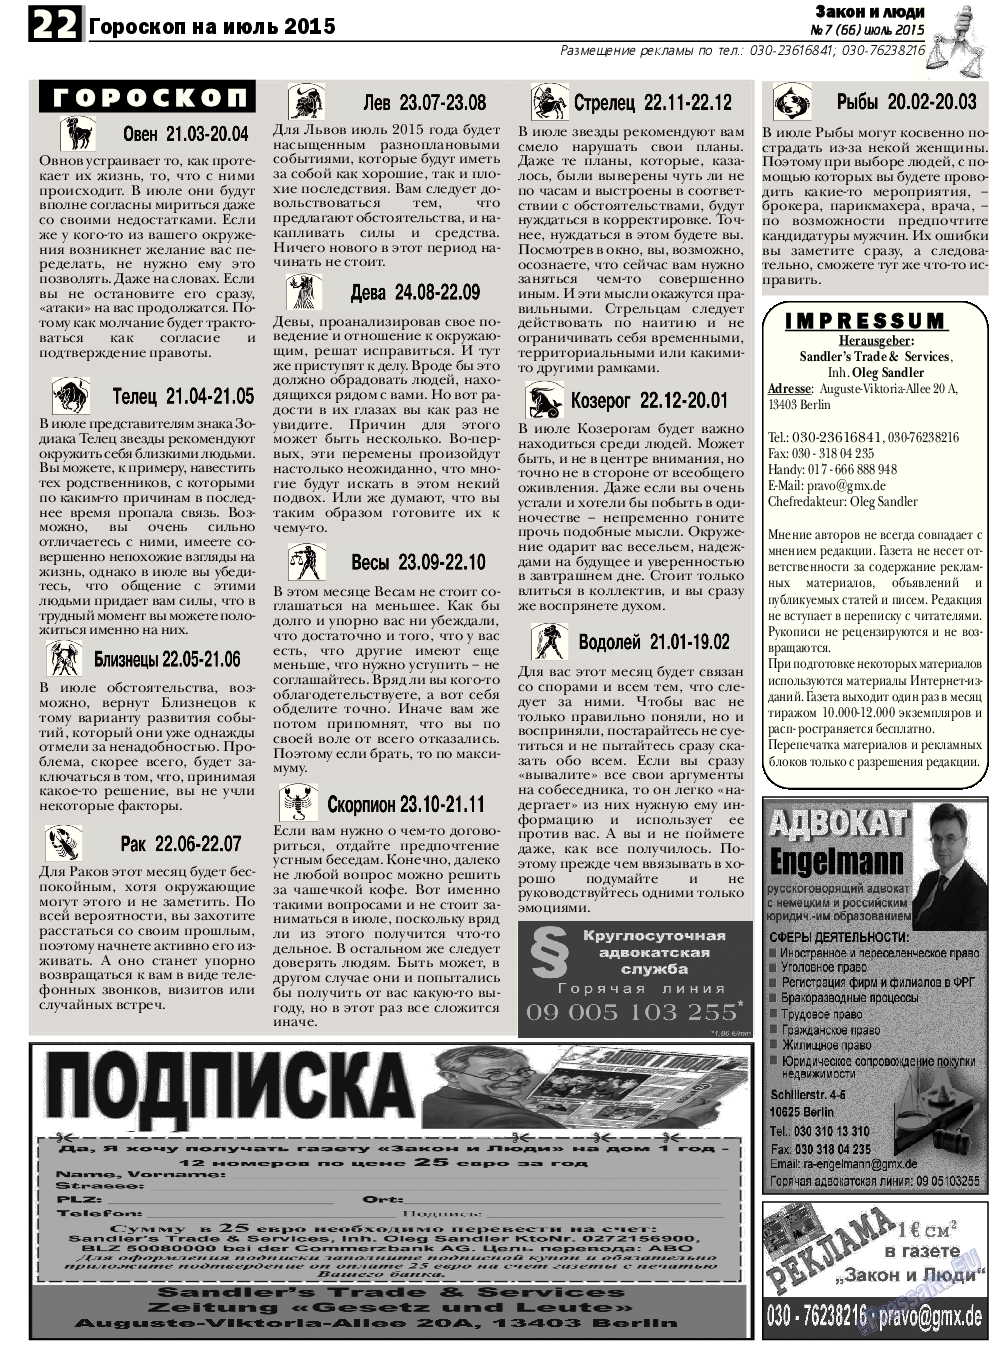 Закон и люди, газета. 2015 №7 стр.22